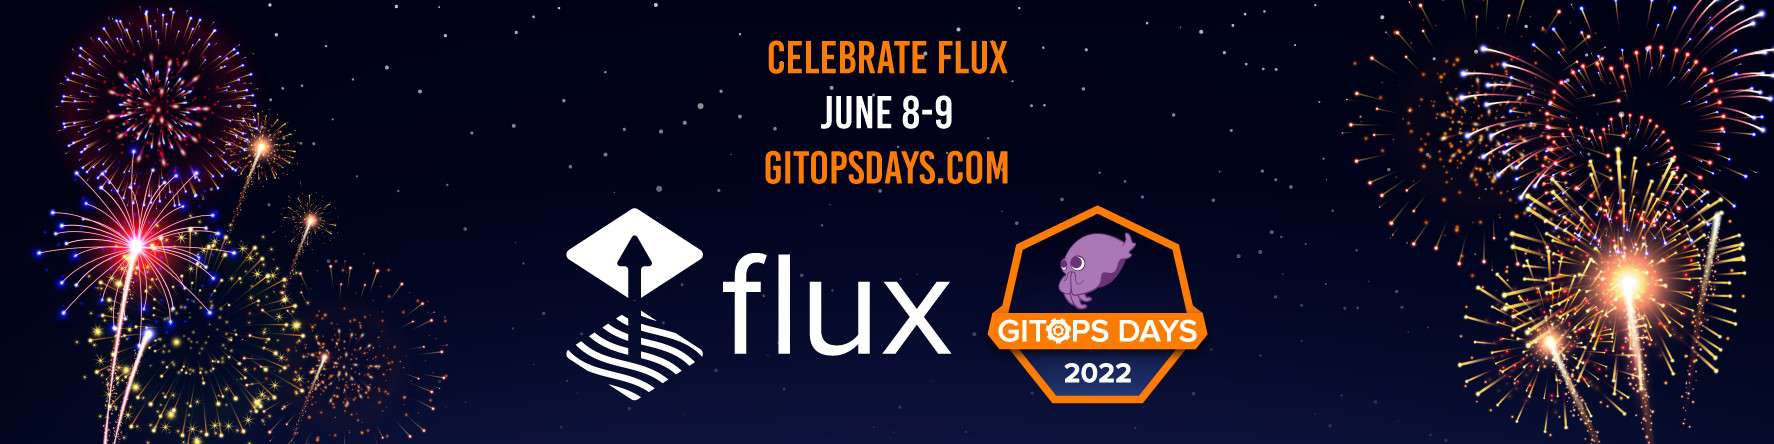 Celebrate Flux June 8-9gitopsday.com